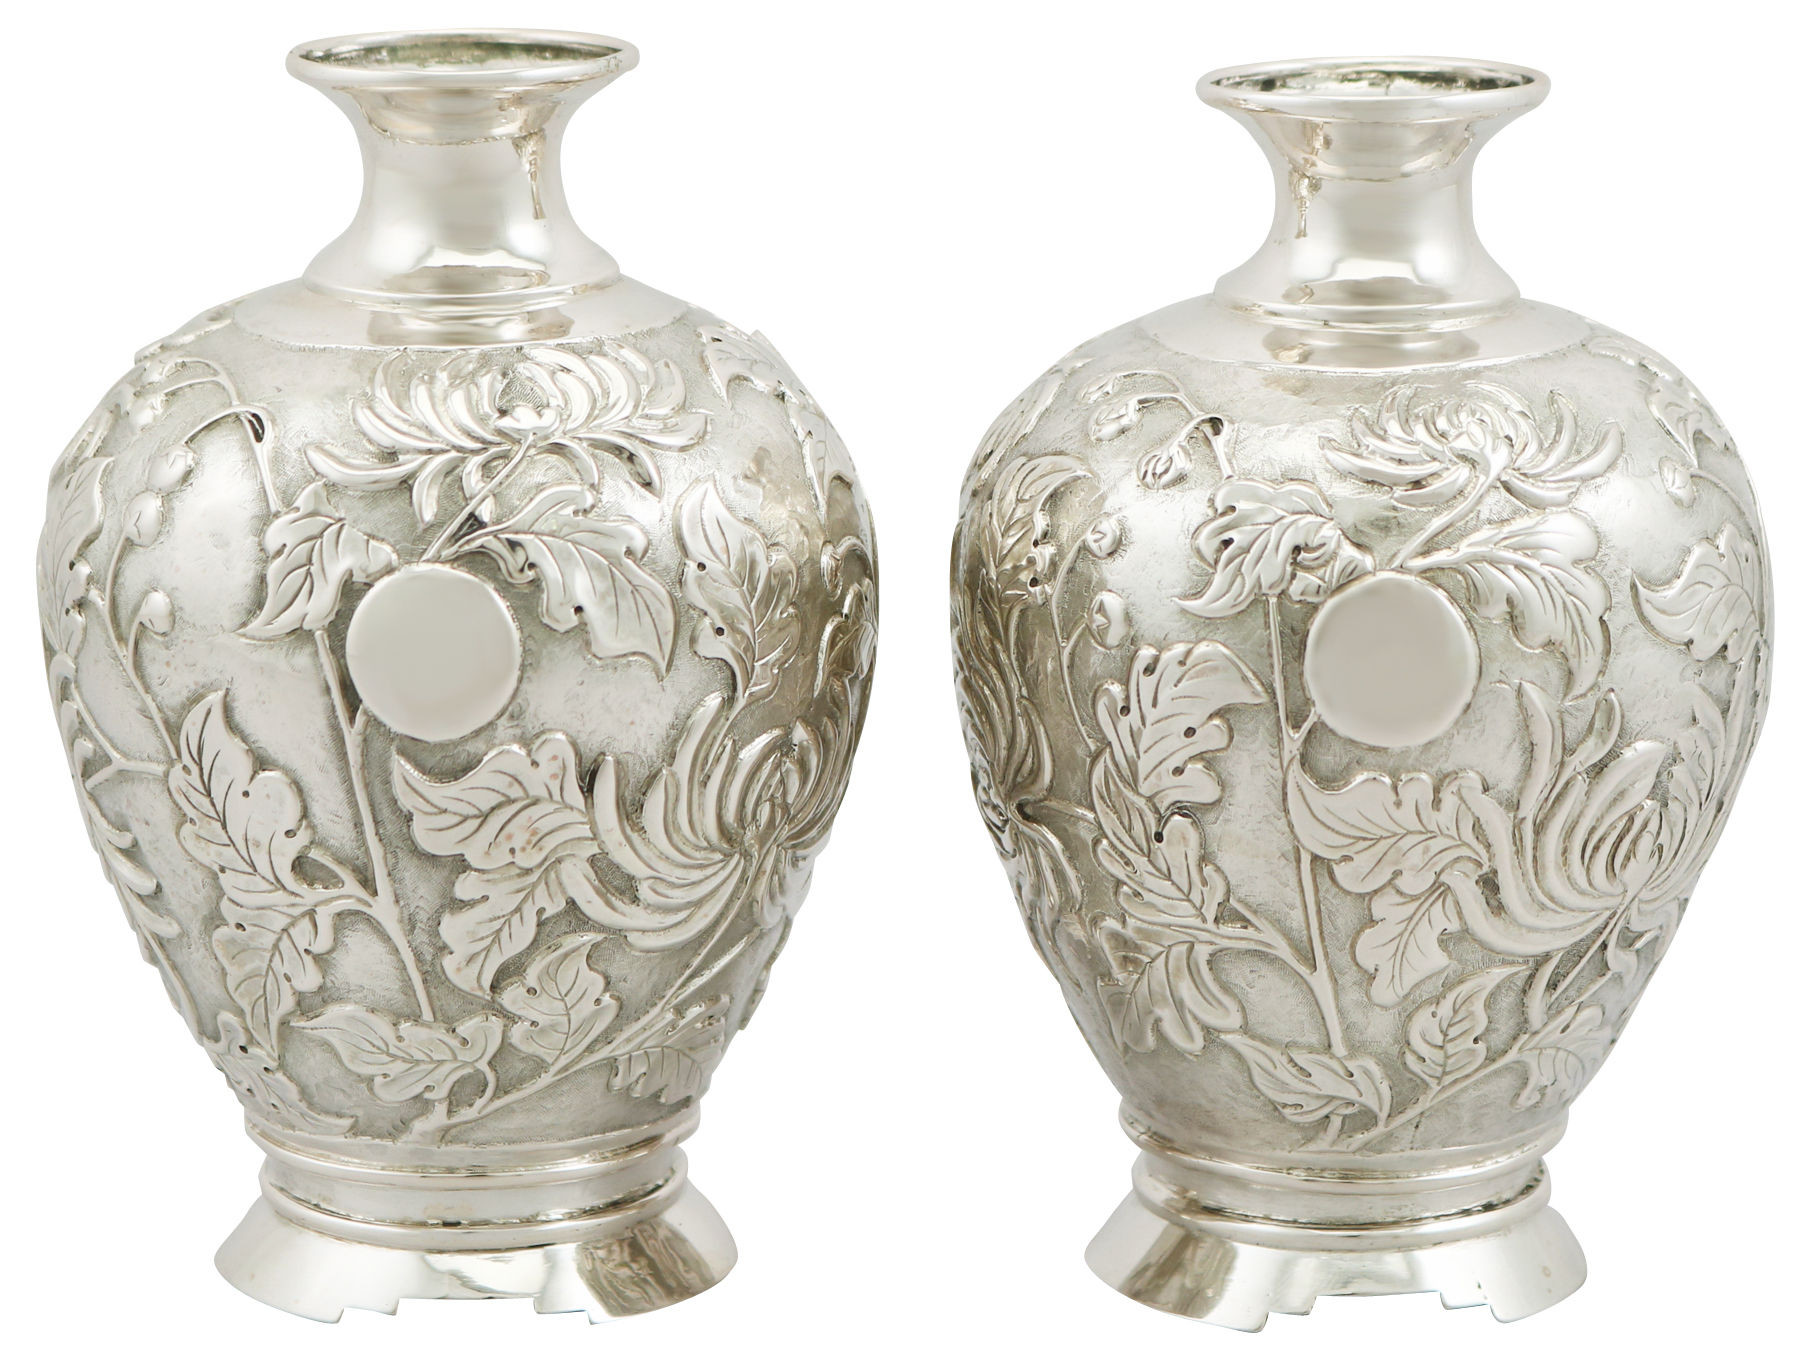 27 Cute Macau Porcelain Vase 2024 free download macau porcelain vase of vases macau the uks premier antiques portal online galleries in antique japanese silver bud vases